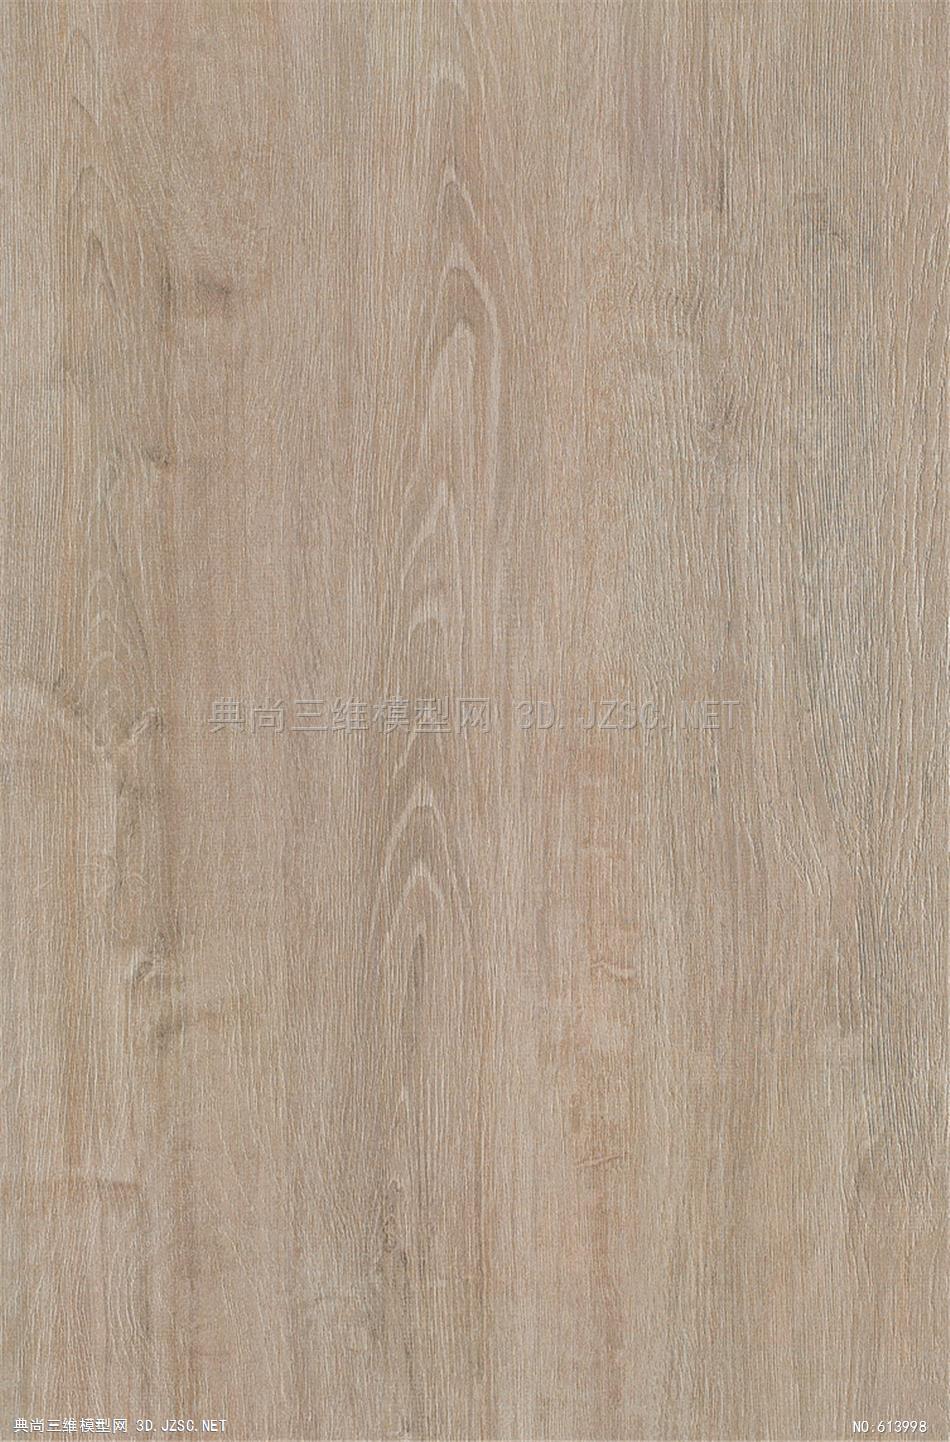 木饰面 木纹 木材  高清材质贴图 (214)